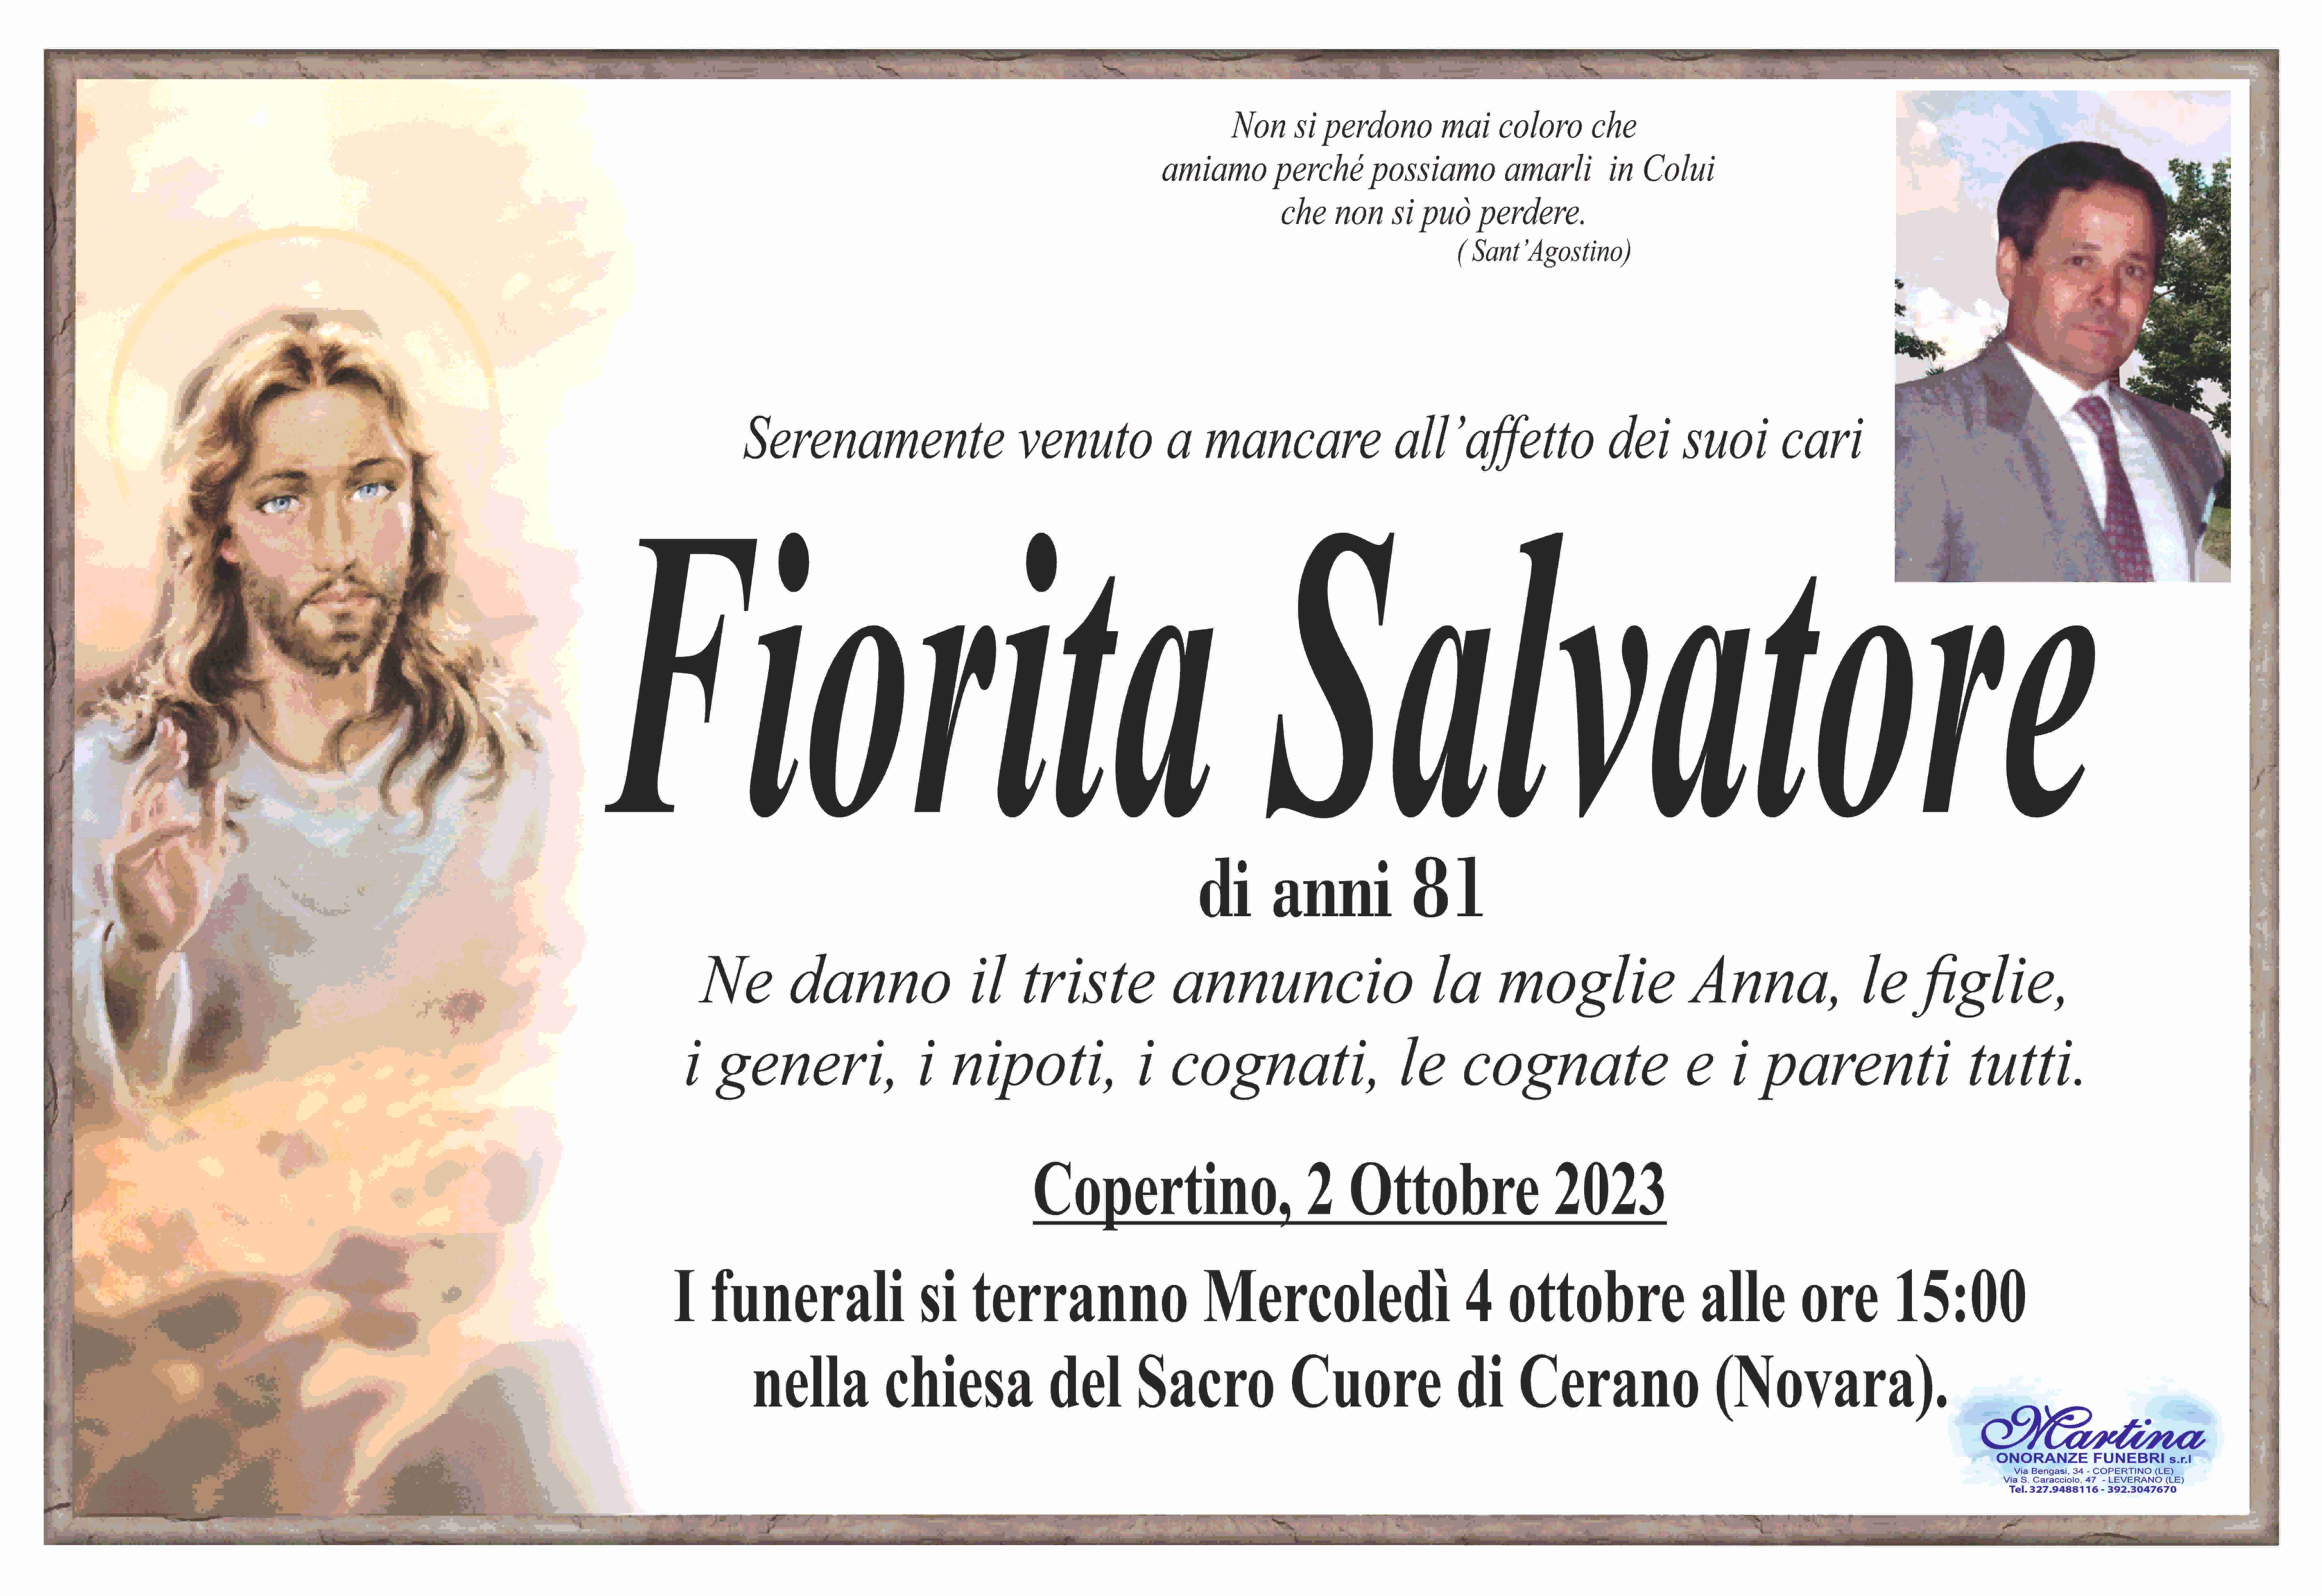 Salvatore Fiorita